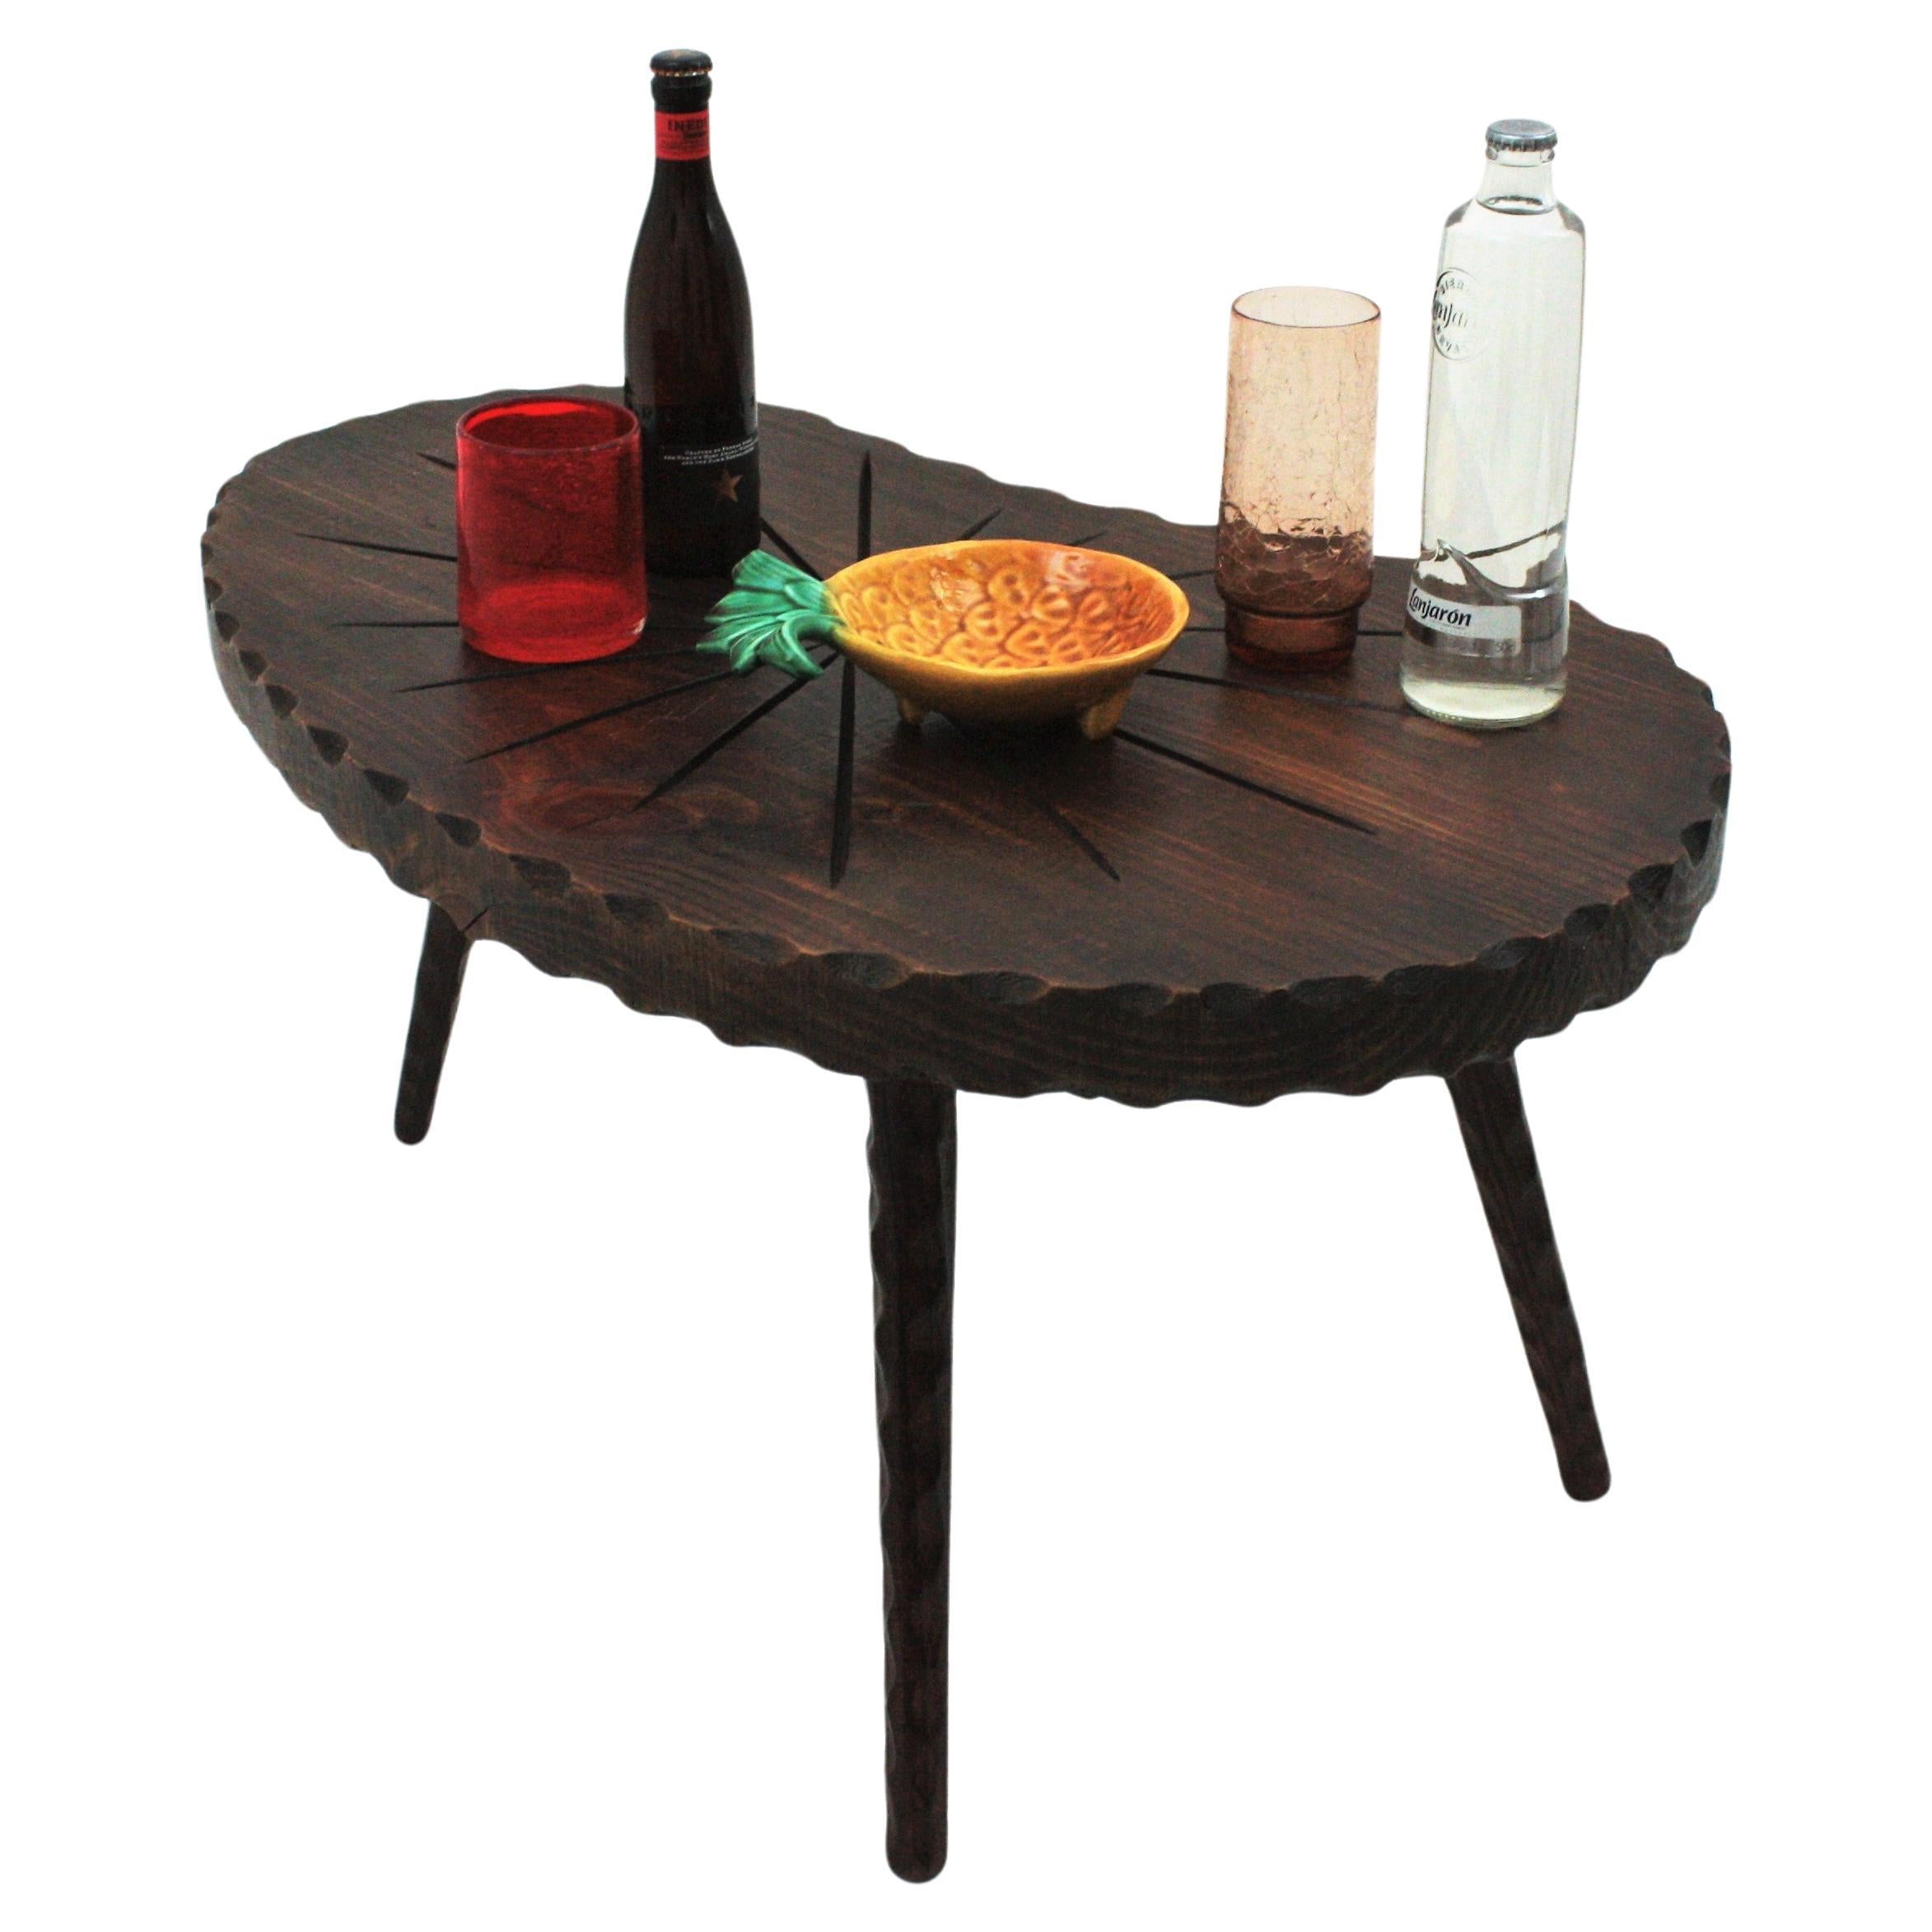 Geschnitzter Nierentisch aus der Mitte des Jahrhunderts, 1950er Jahre.
Dieser Tisch hat eine starke Konstruktion, die von rustikalen und spanischen Kolonialmöbeln inspiriert ist, aber eine typische Nierenform aus den Designs der fünfziger